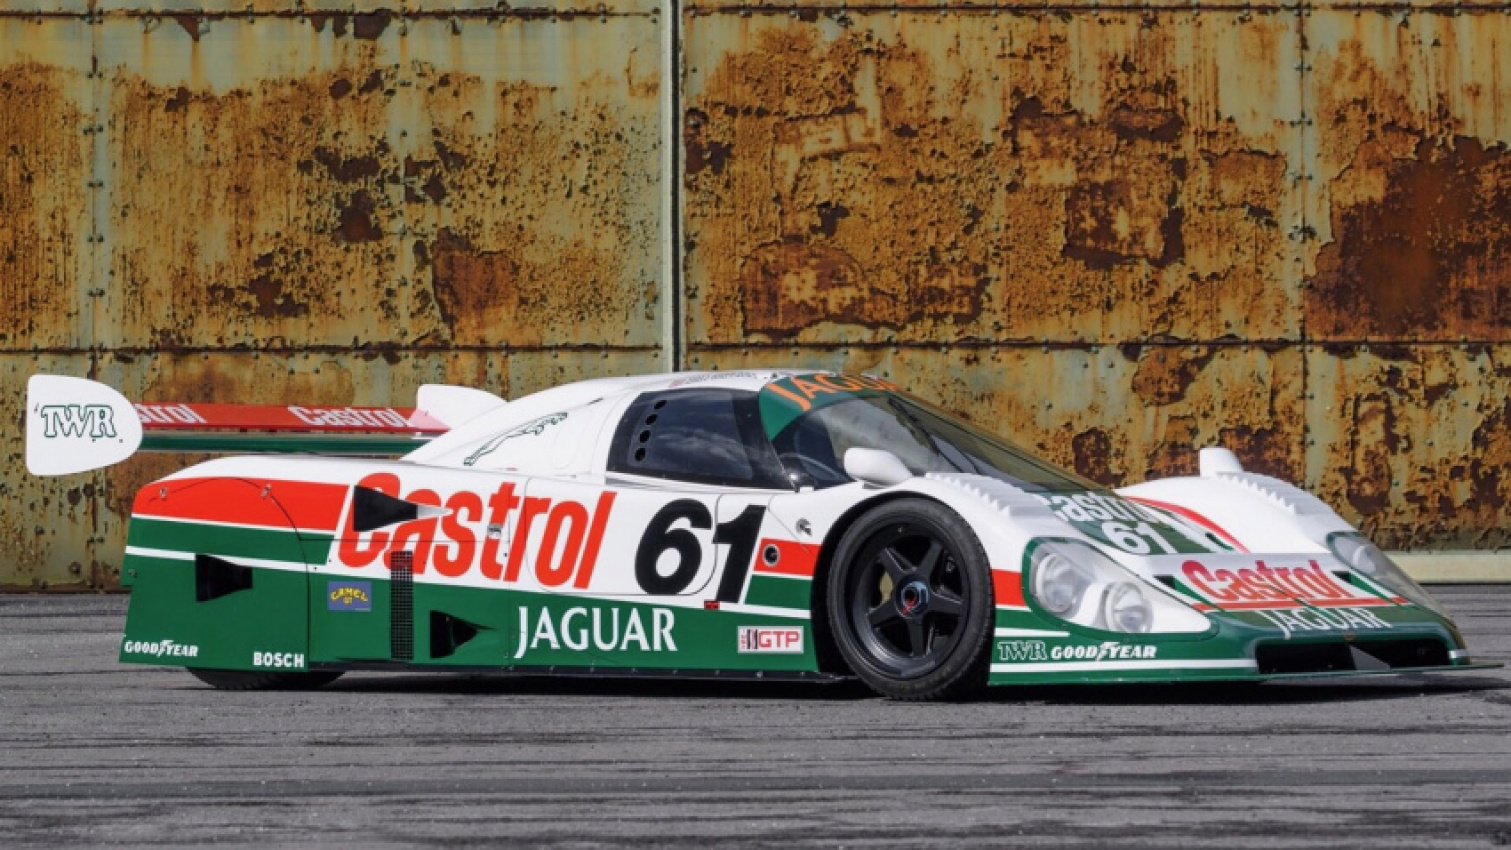 autos, cars, jaguar, auctions, classic cars, jaguar news, racing, 1988 jaguar xjr-9 heads to auction